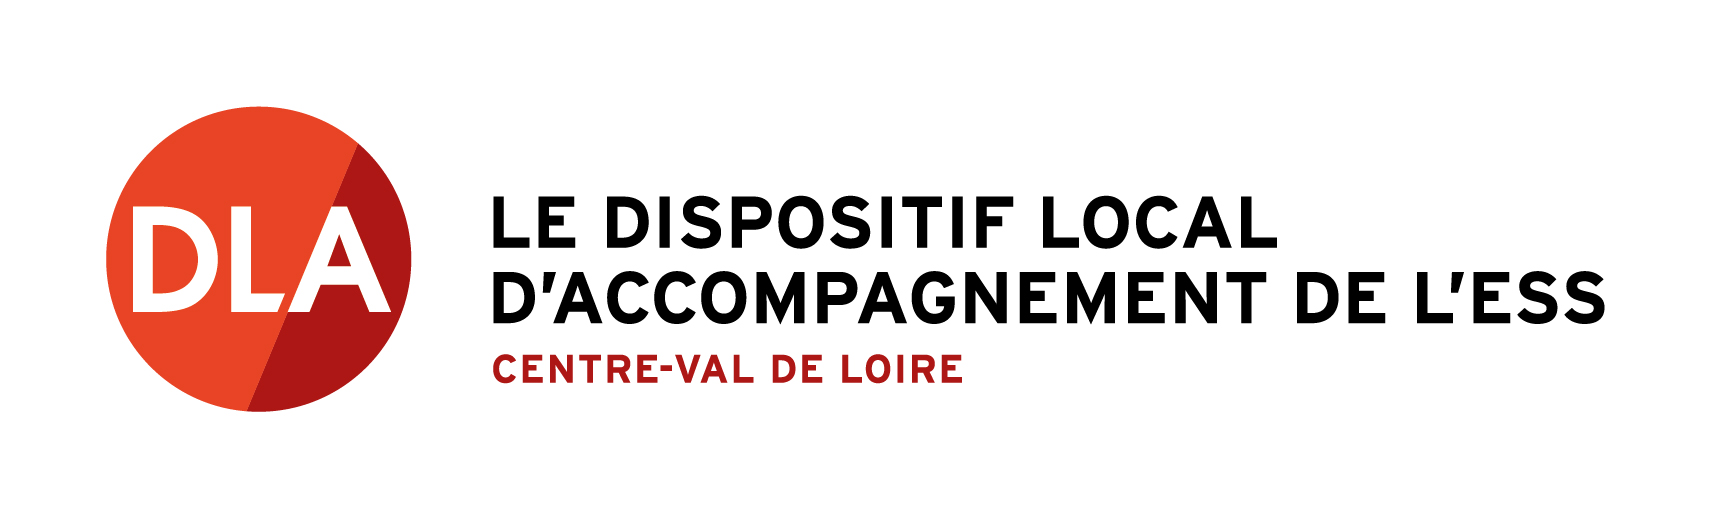 Logo Ligue de l'enseignement Centre-Val de Loire